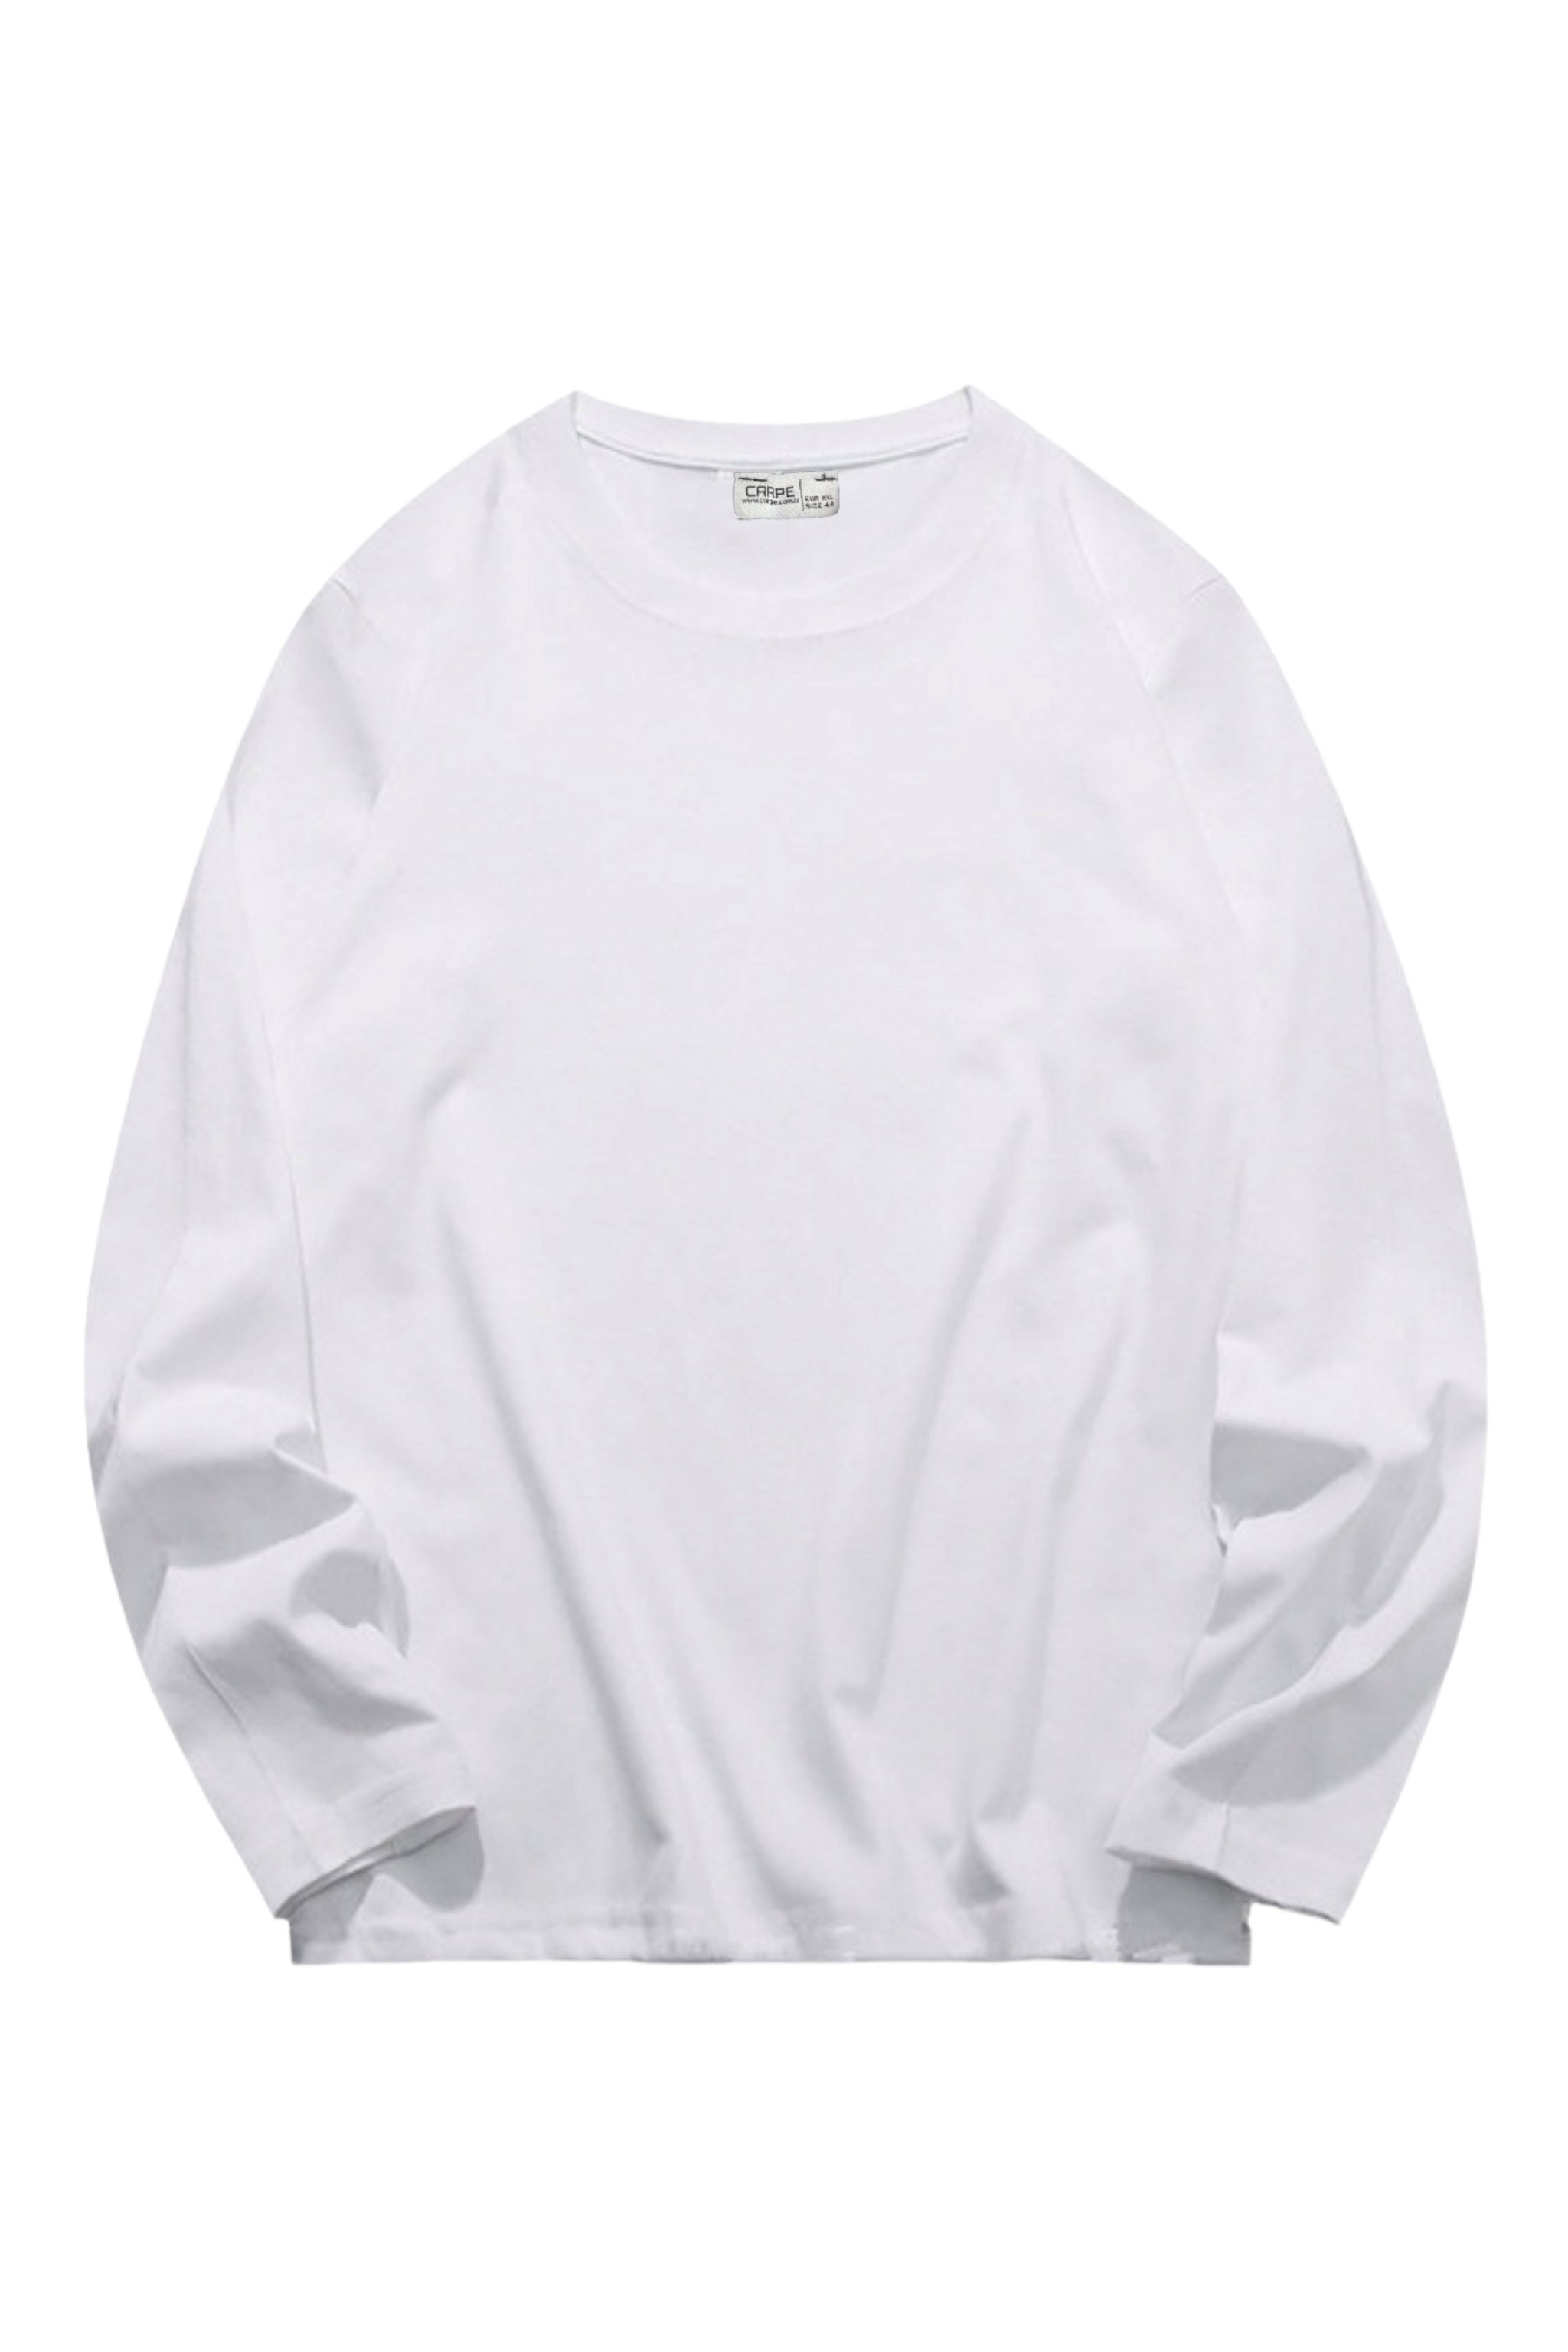 Beyaz Oversize Sweatshirt Ürününü Hemen İncele